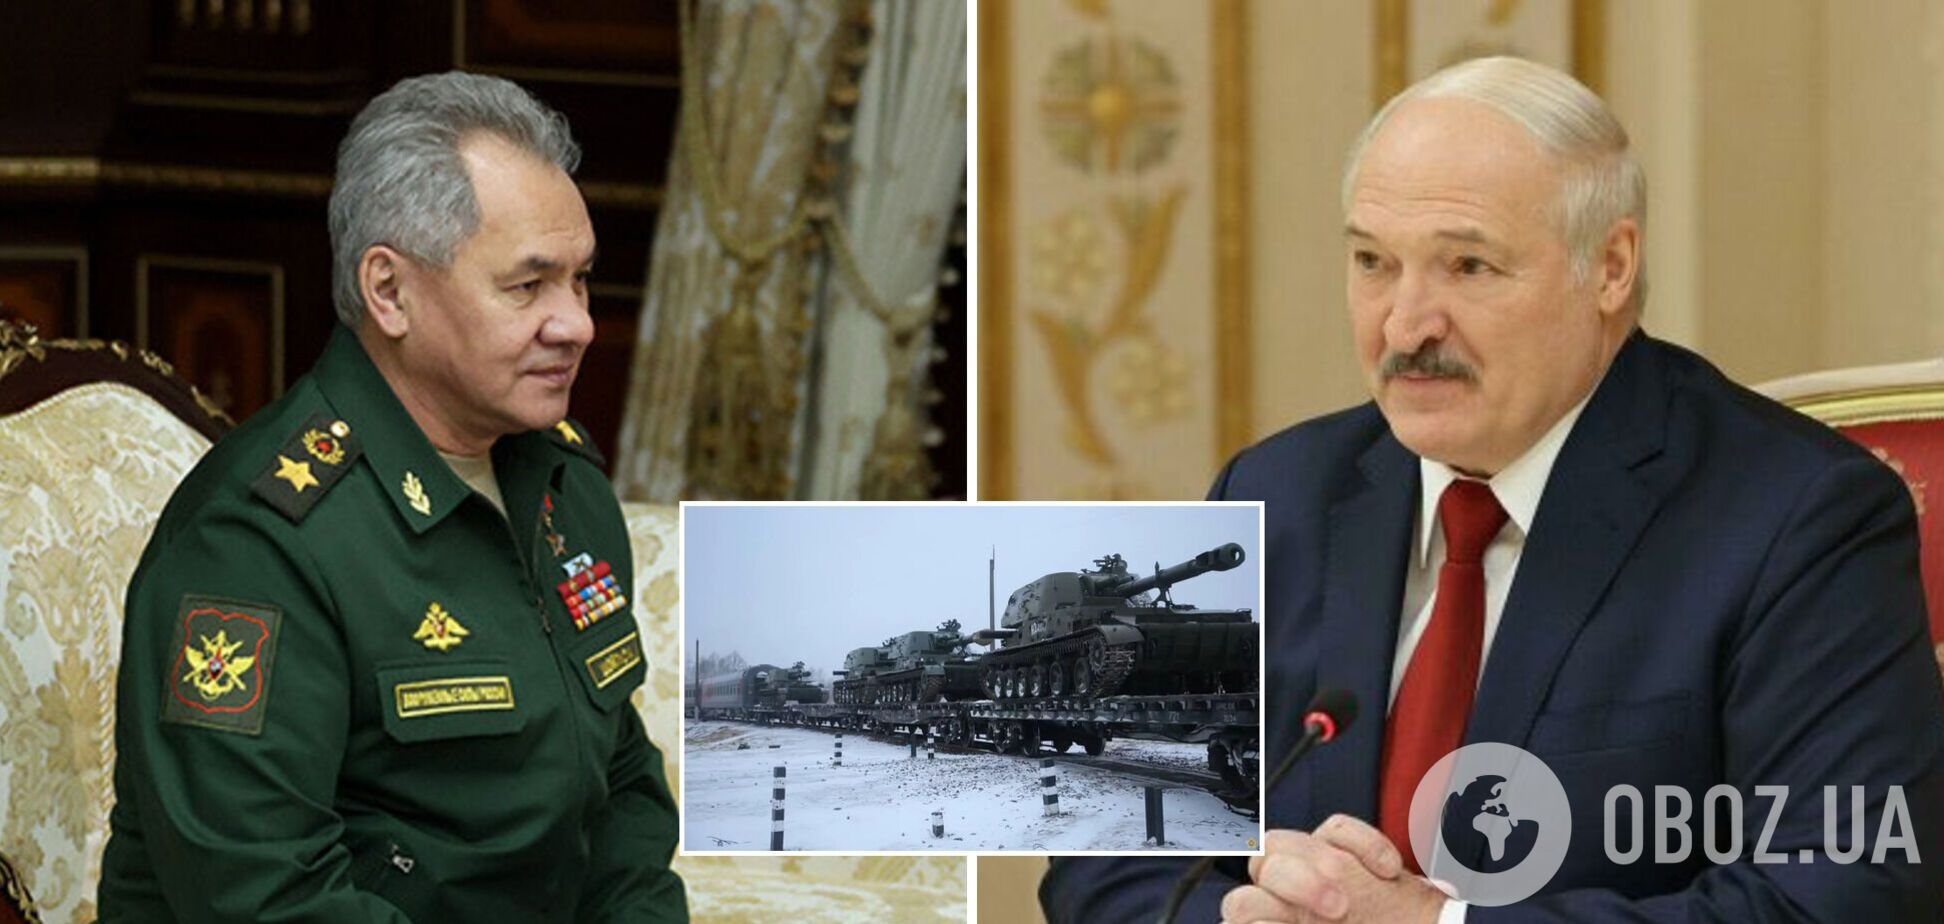 Лукашенко хочет закупить у РФ почти всю технику, участвующую в учениях